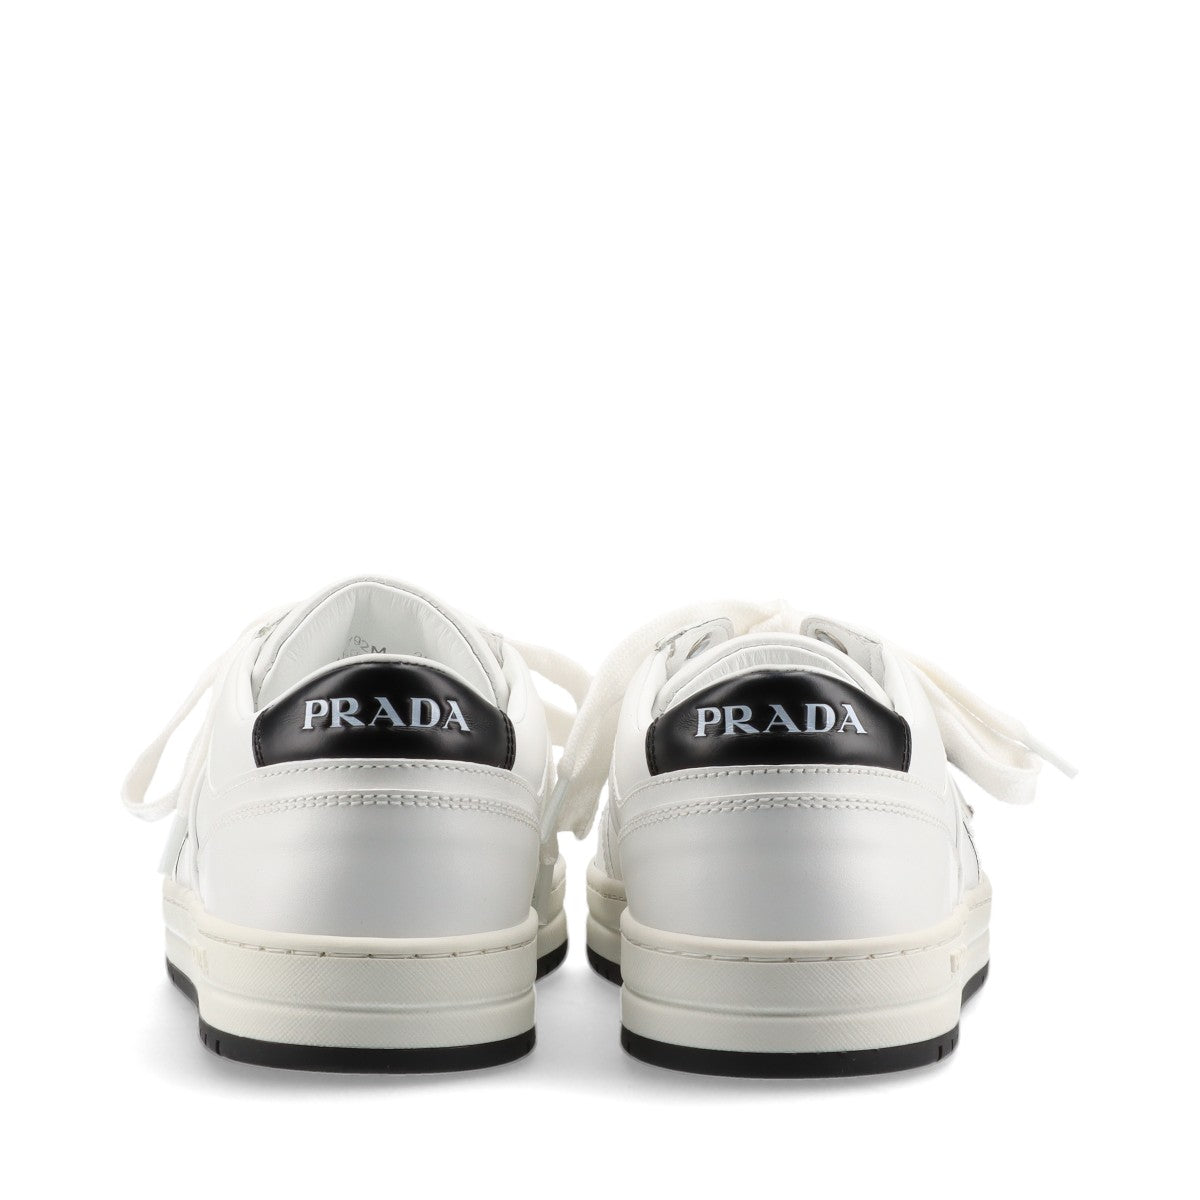 Prada Leather Sneakers EU39 1/2 Ladies' White 1E792M Triangle logo